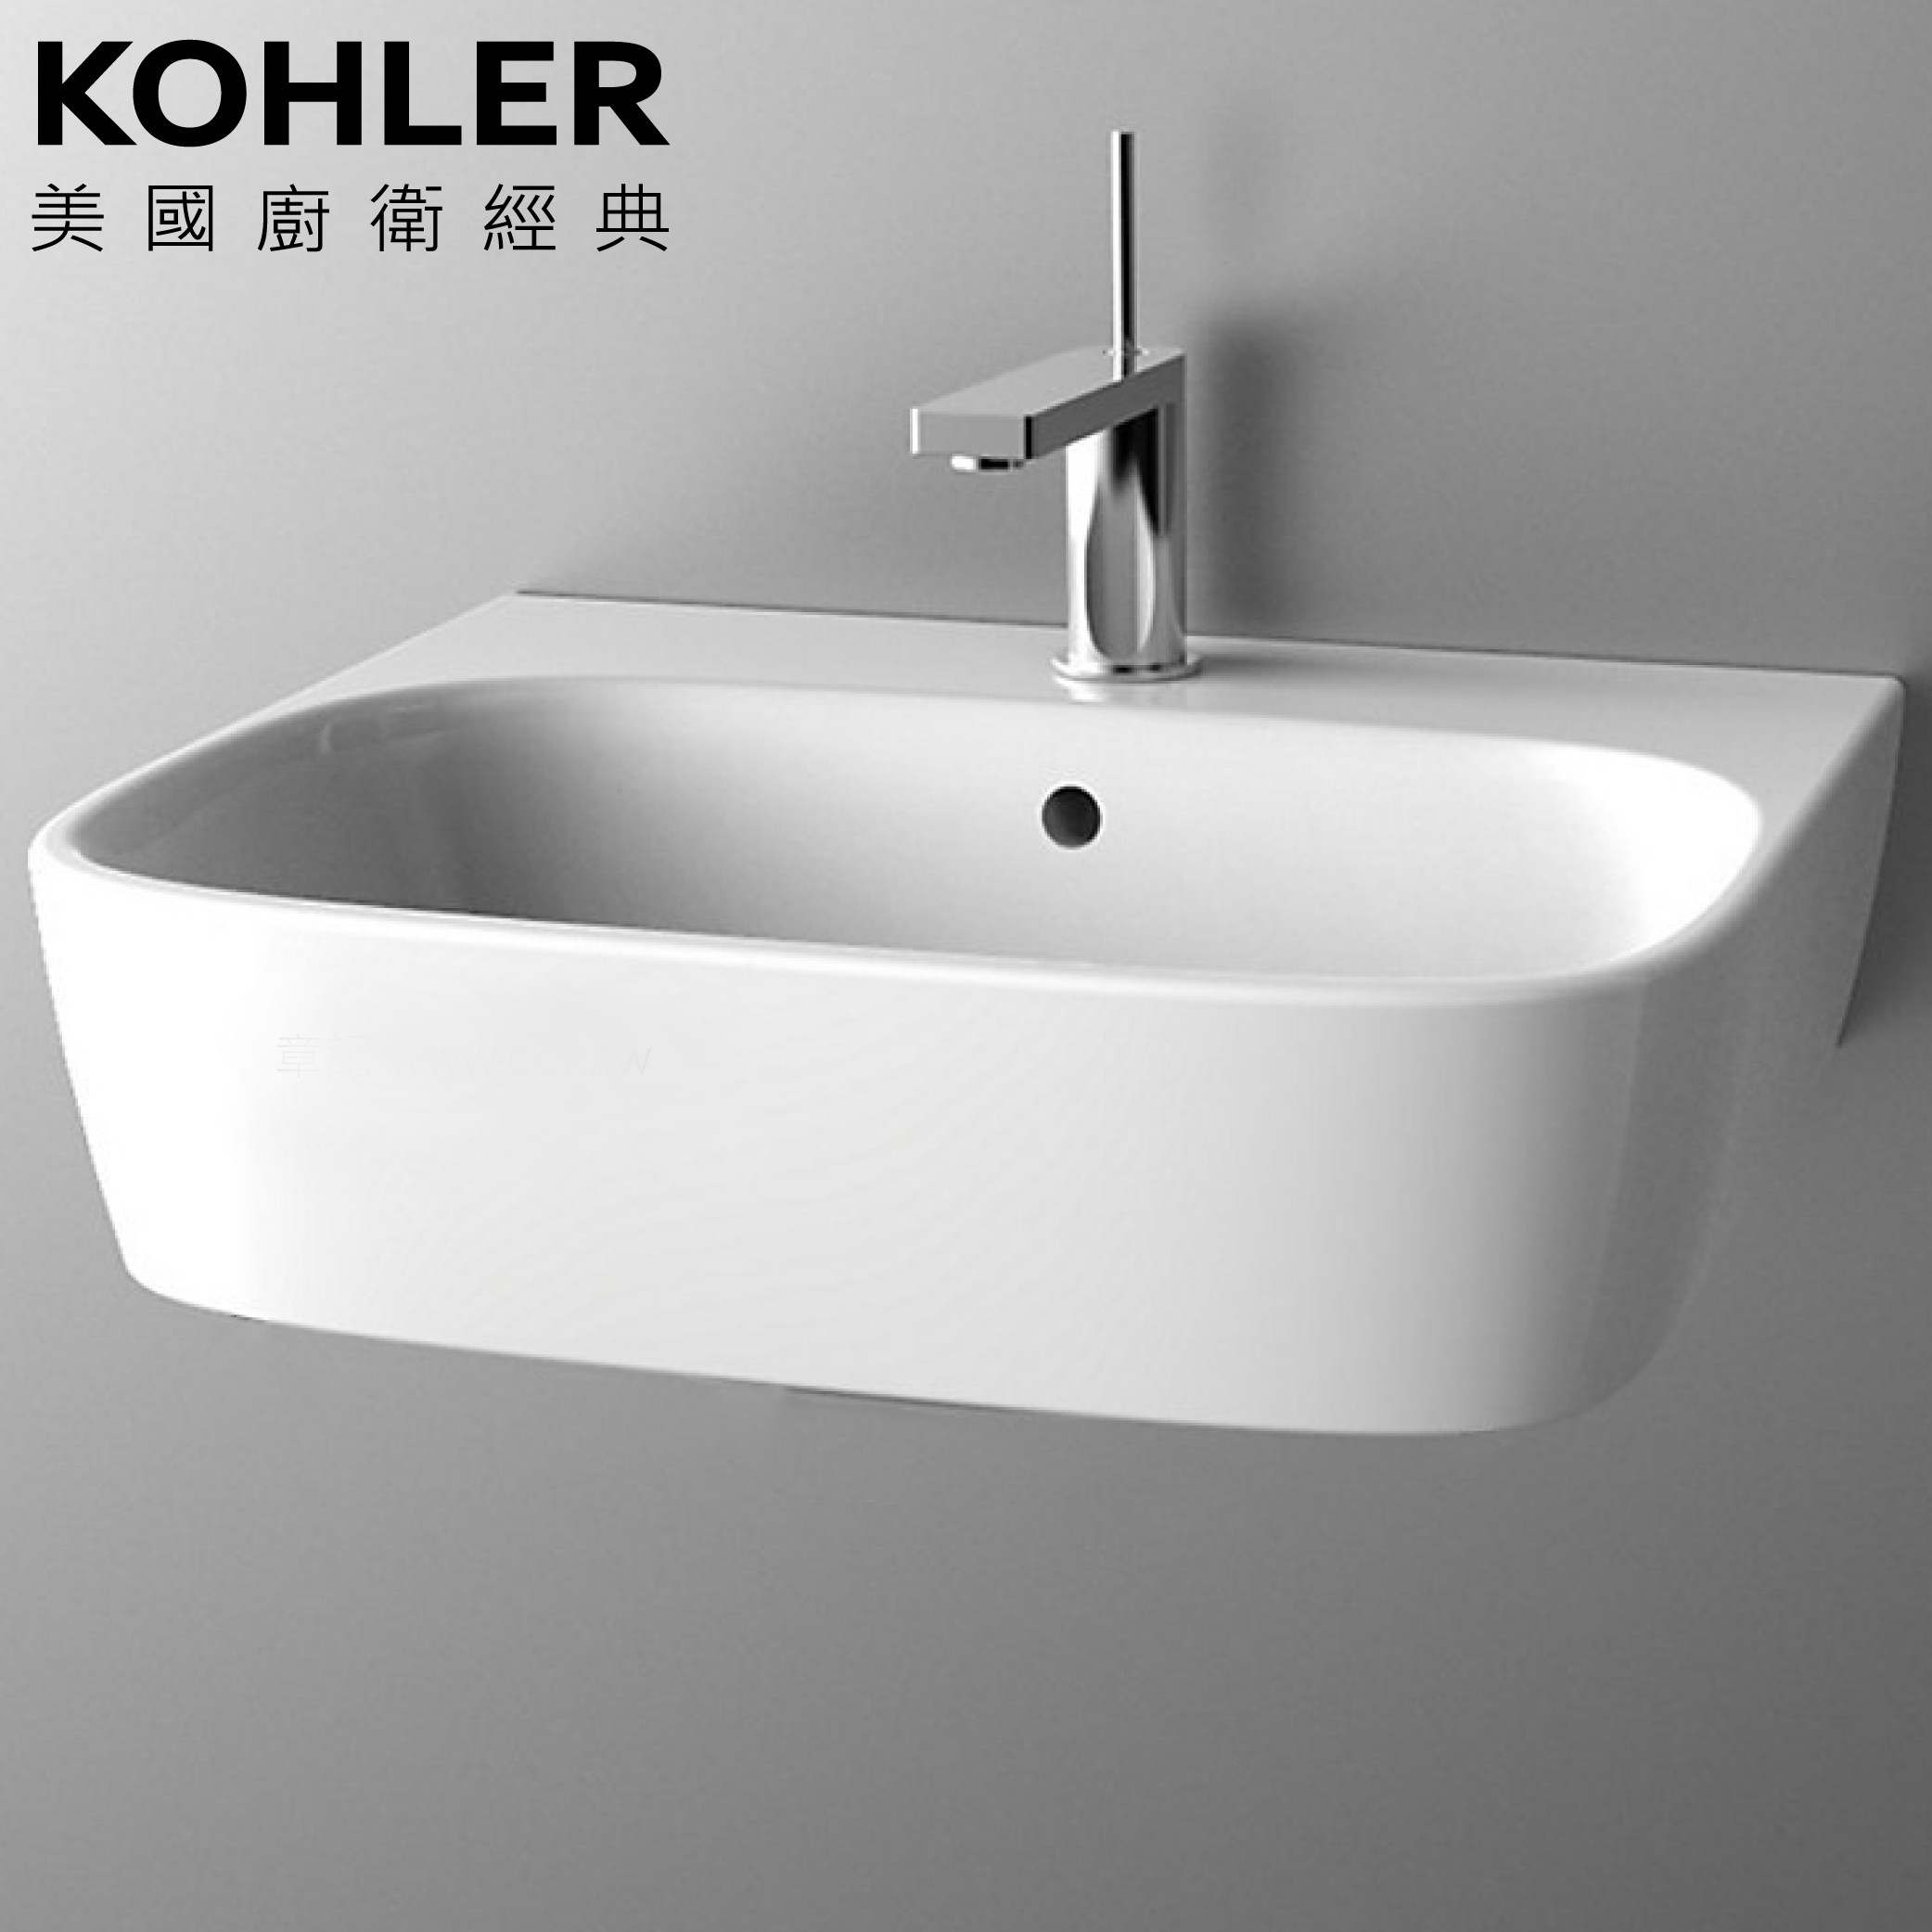 【經銷優惠精選】KOHLER<BR>K-77767K-1-0<br>Modern Life 單孔壁掛式面盆<br>(55x45cm)  |超值組合|KOHLER年度商品